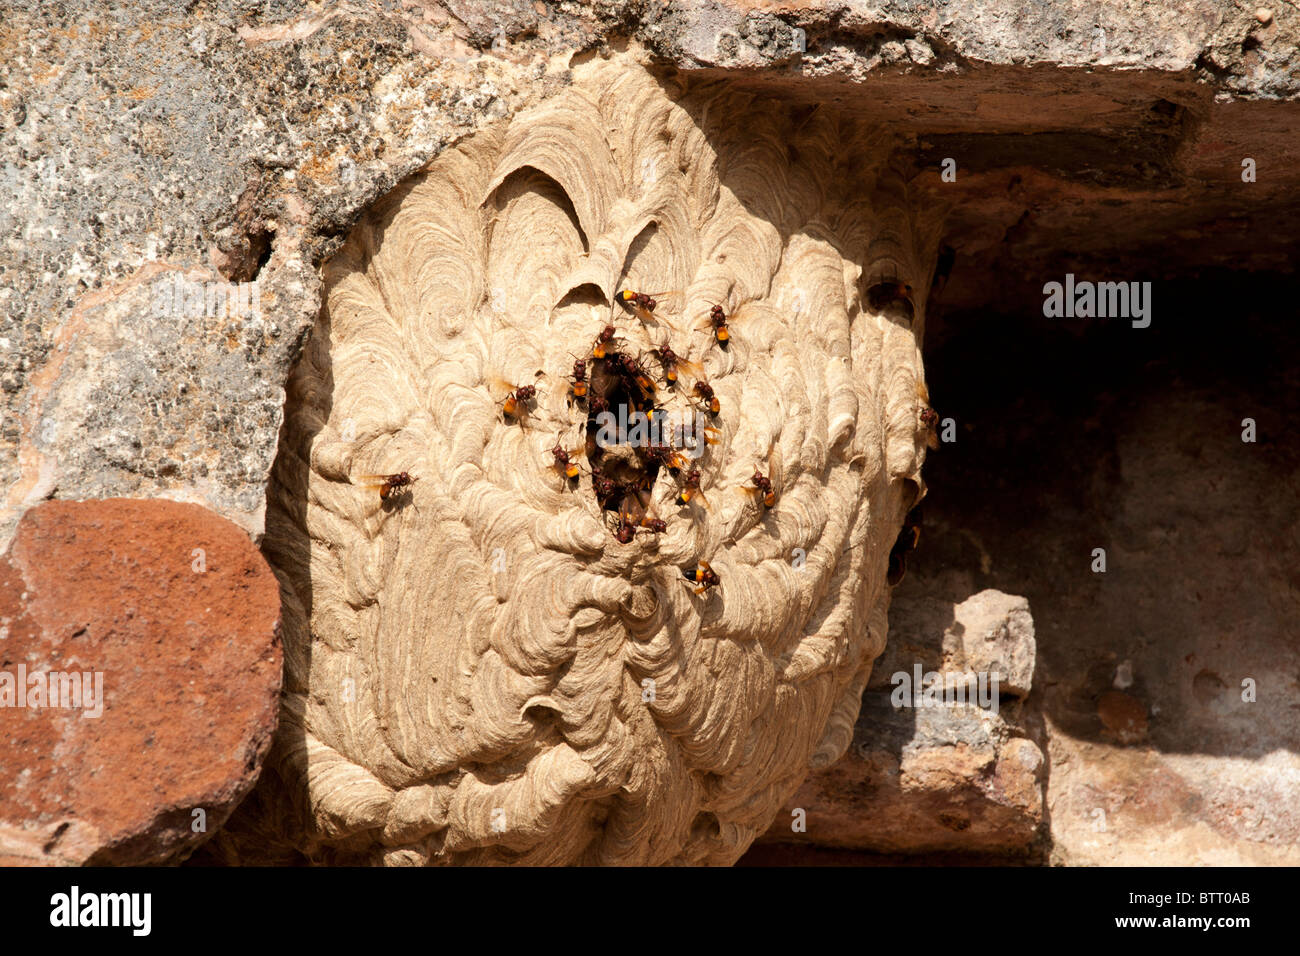 Hornets nest, Polonnaruwa, Sri Lanka Stock Photo